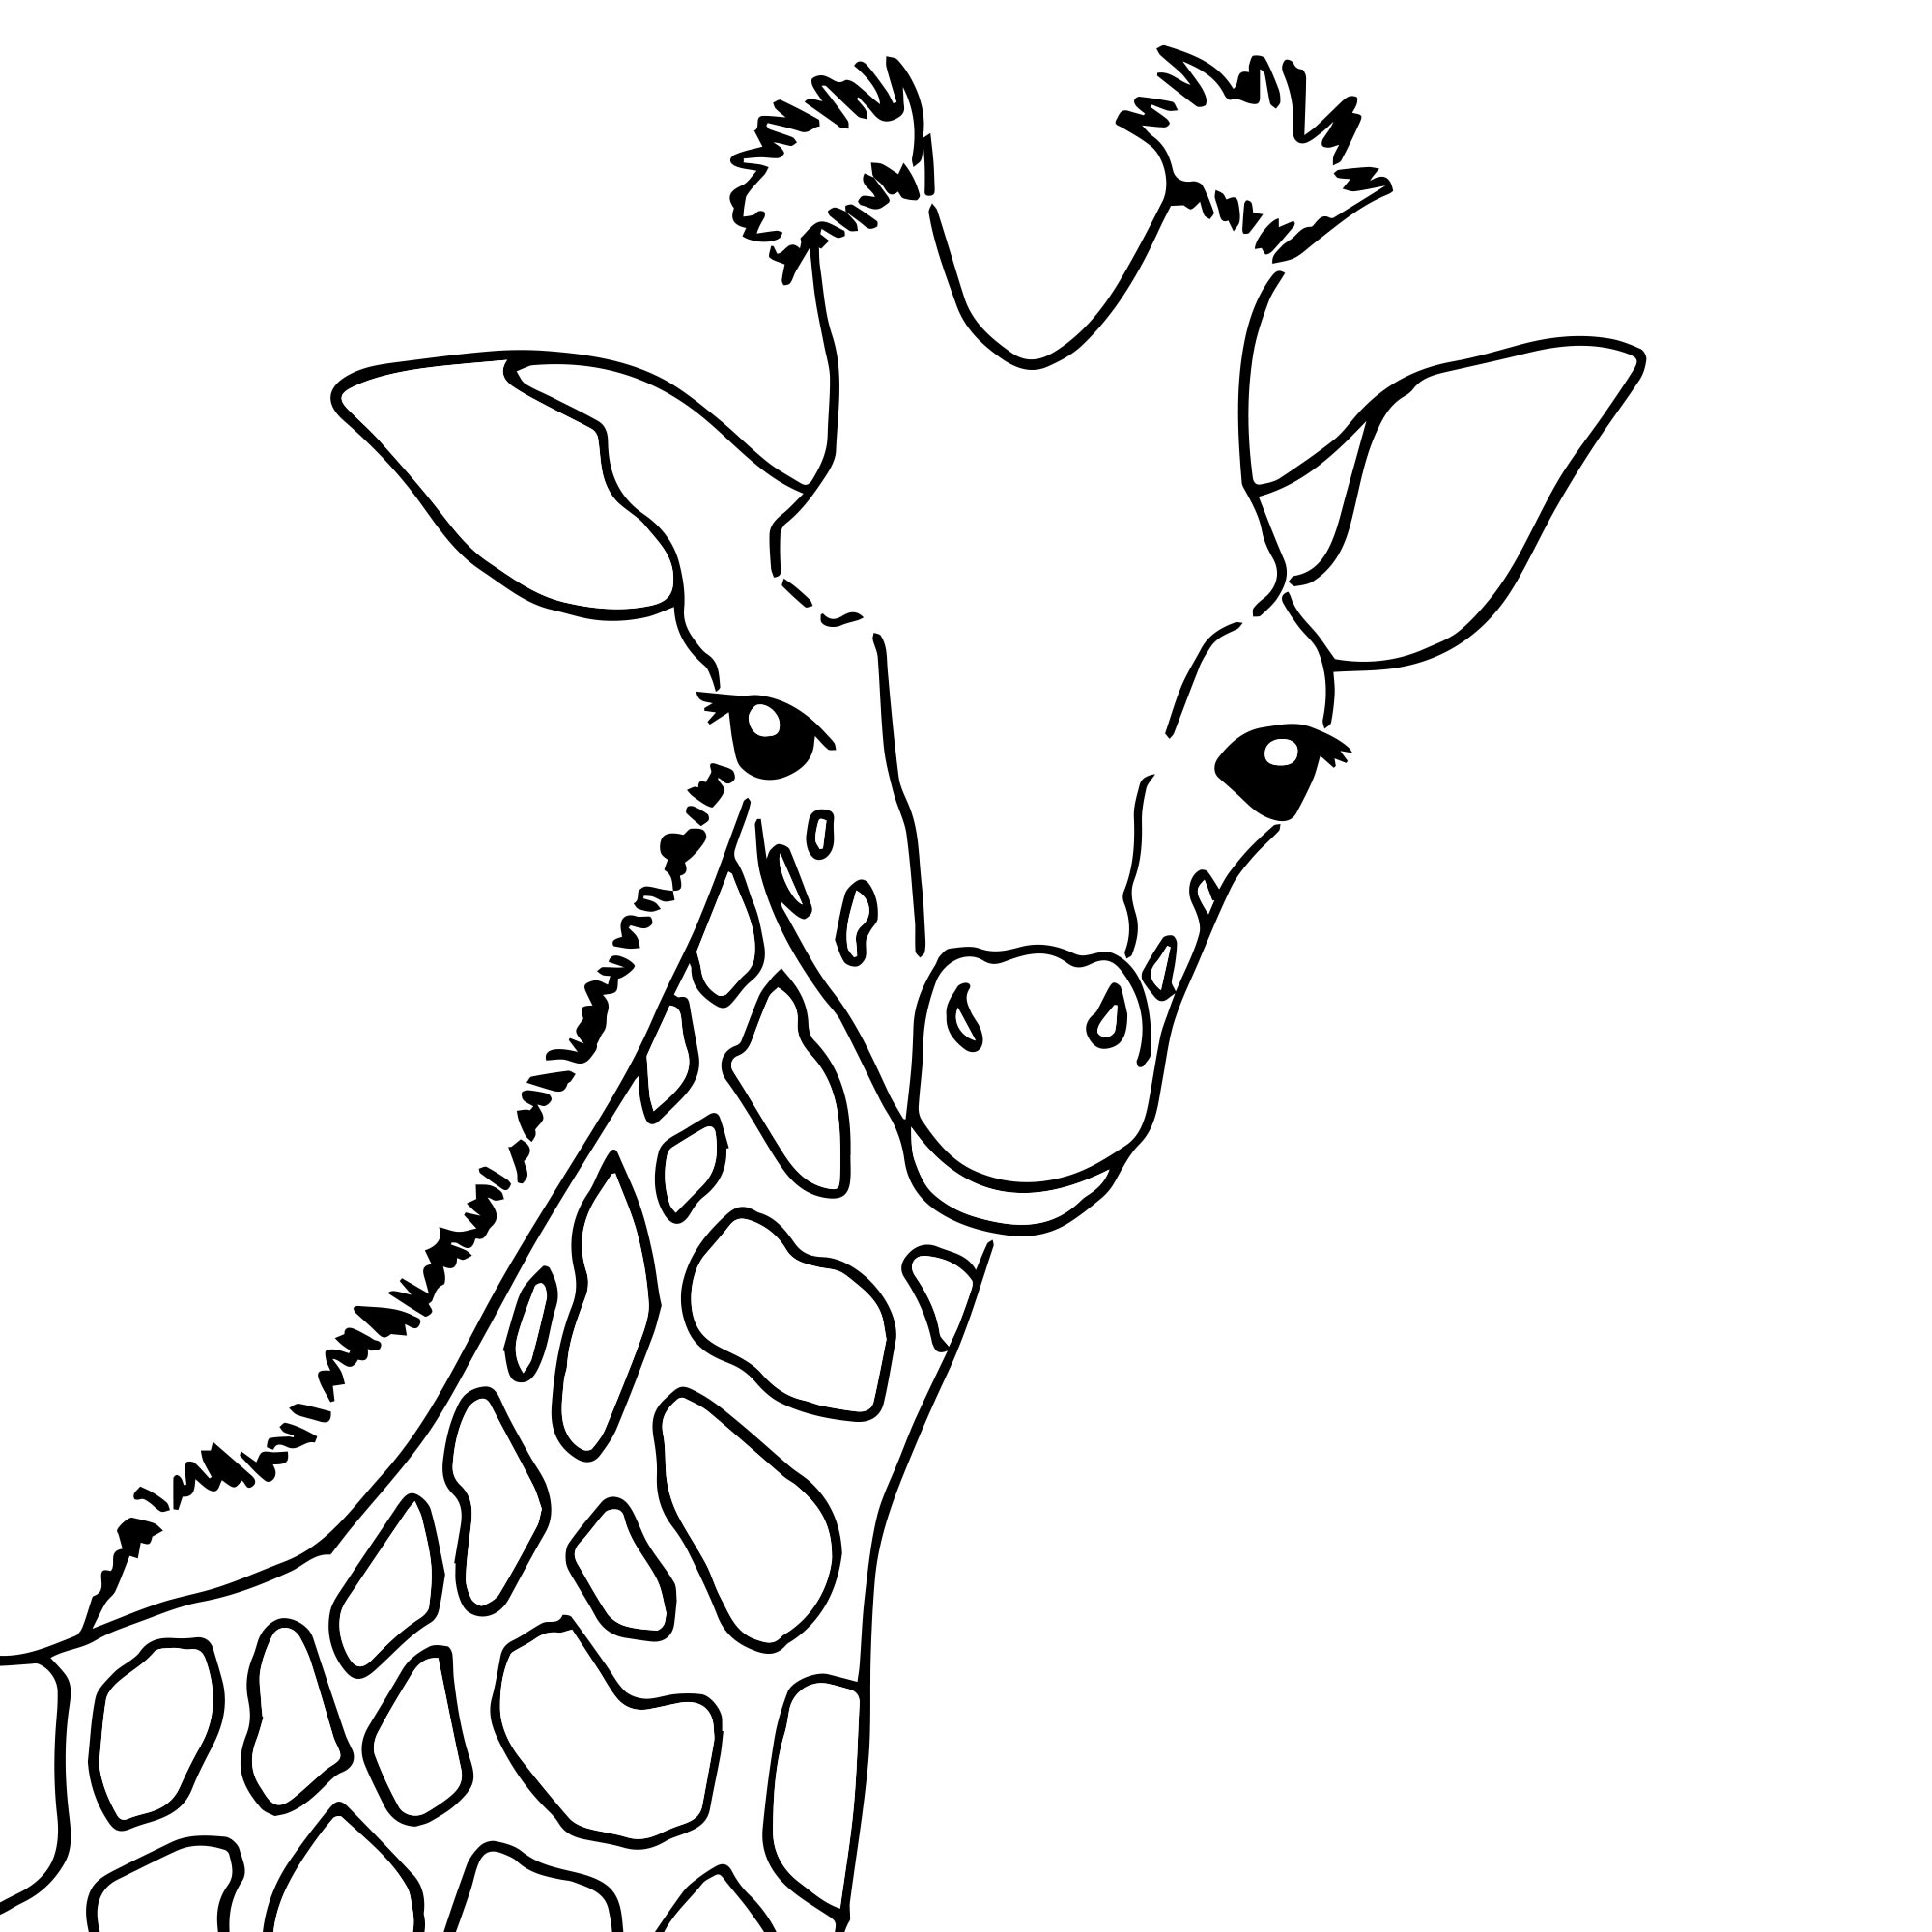 Фото по запросу Страница раскрашивания жирафа детей - страница 2